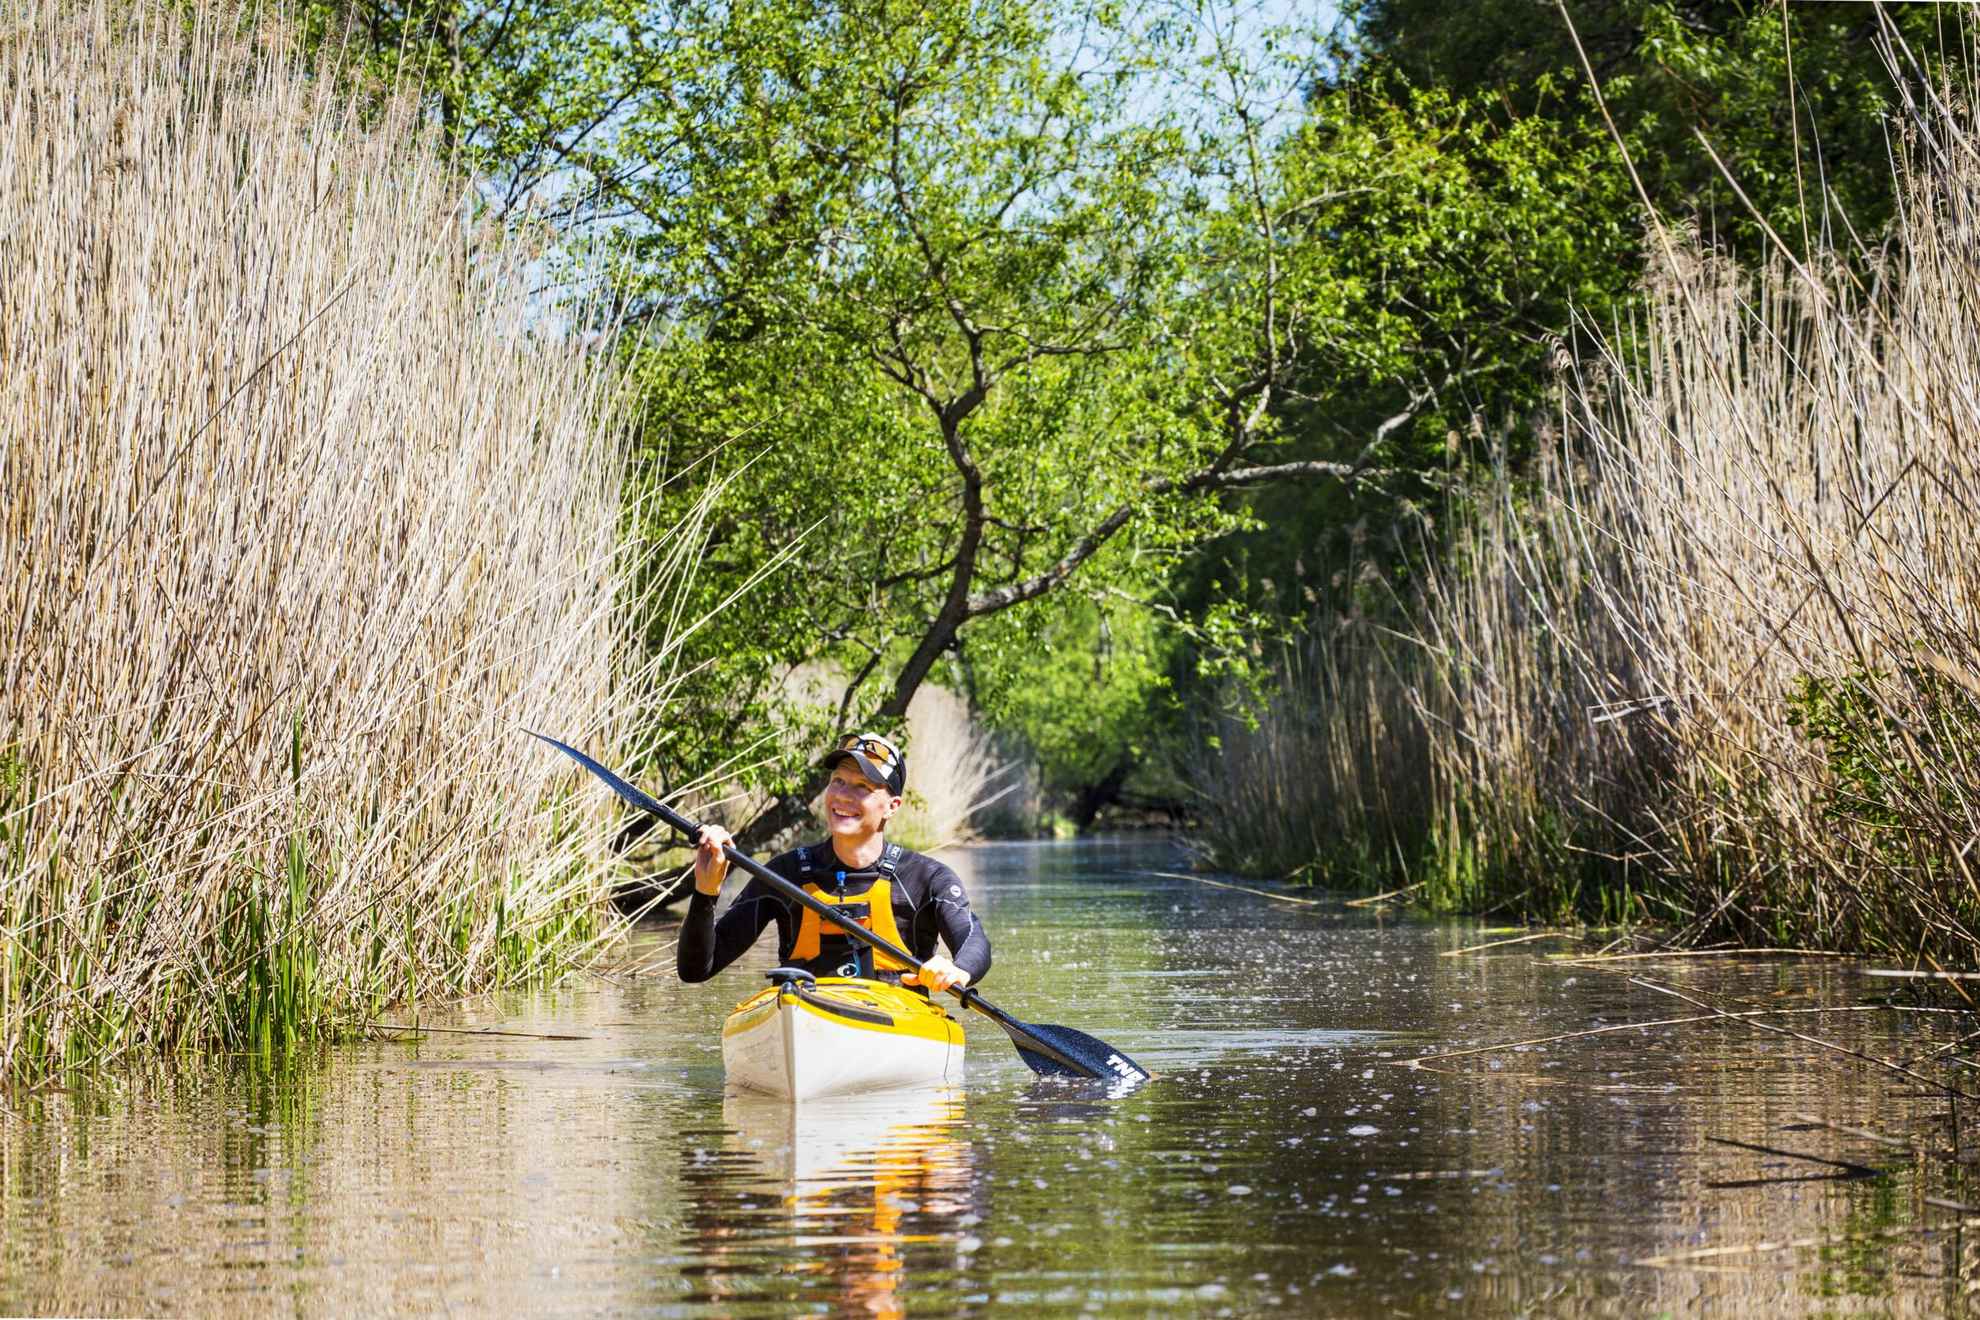 Ein Mann fährt Kajak in einem Fluss. Es gibt Schilf und Bäume auf jeder Seite des Wassers.